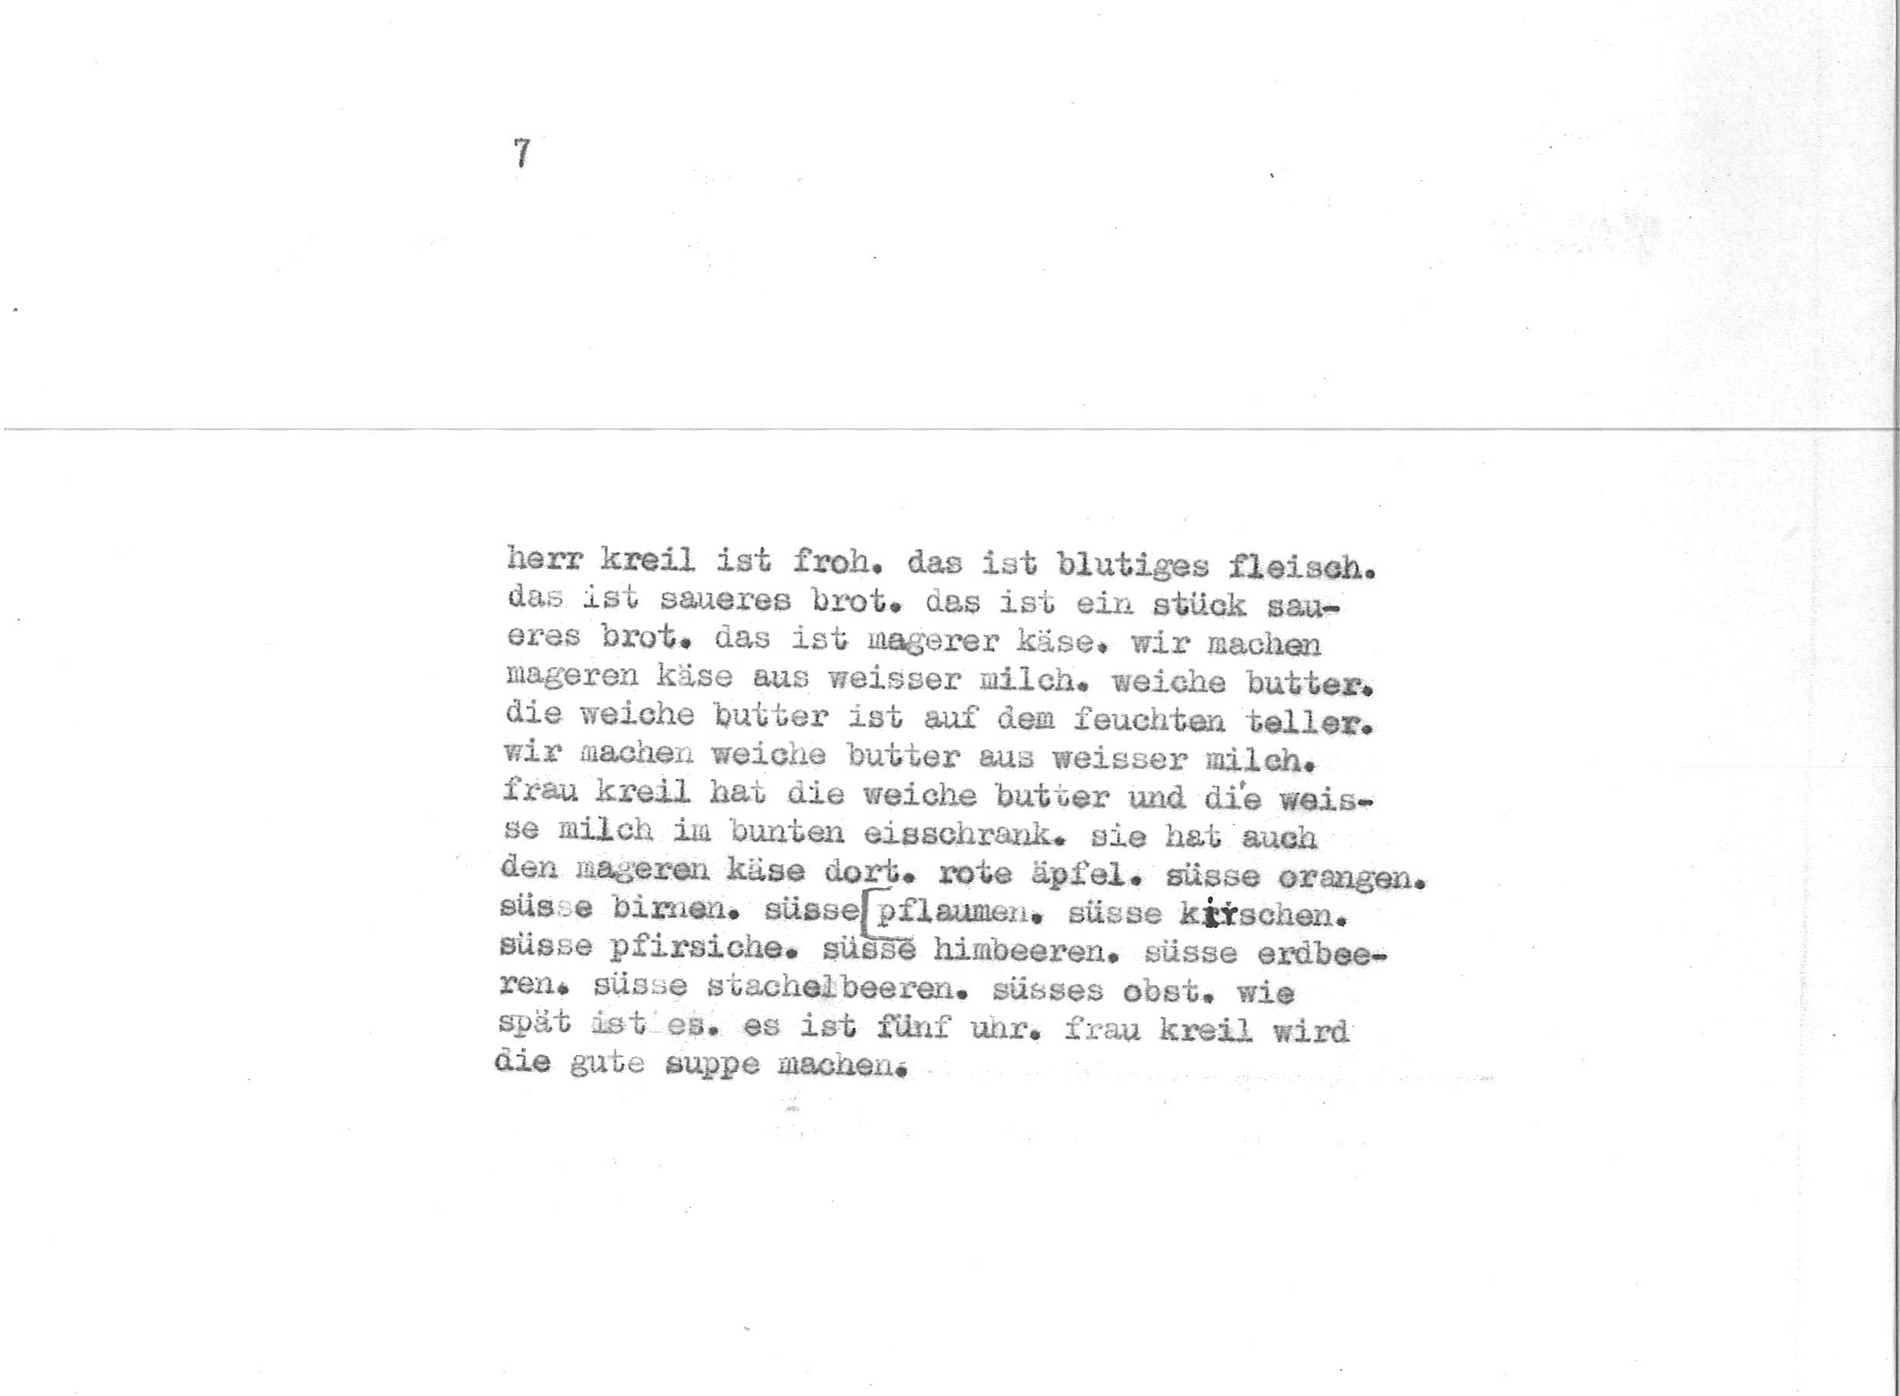 Friedrich Achleitner: "die gute suppe", Seite 7 